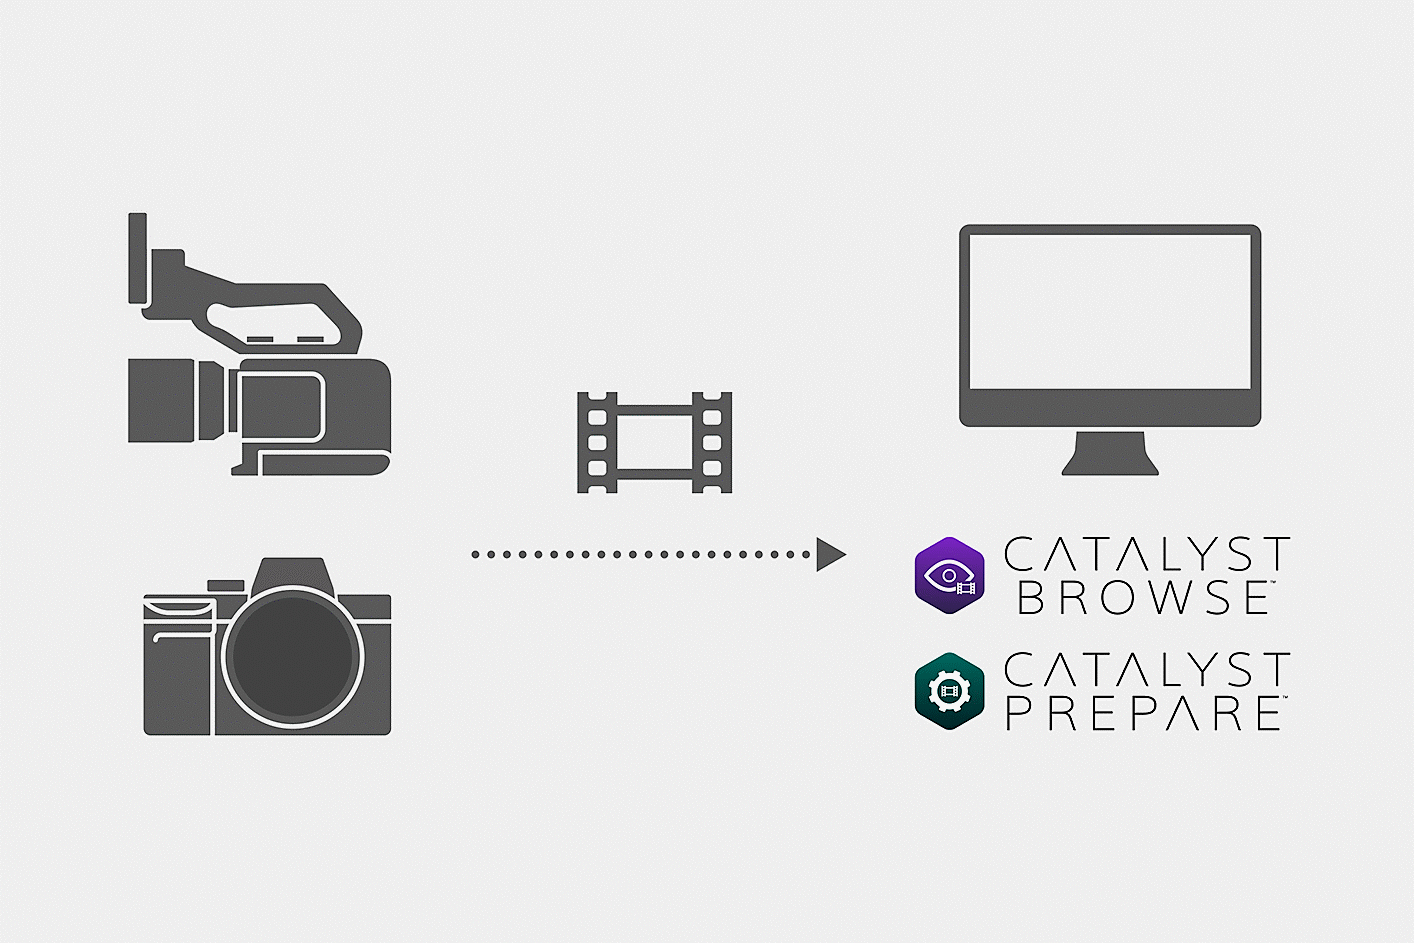 Ilustración que muestra cómo se cargan los archivos de película con la cámara en Catalyst Browse o Catalyst Prepare